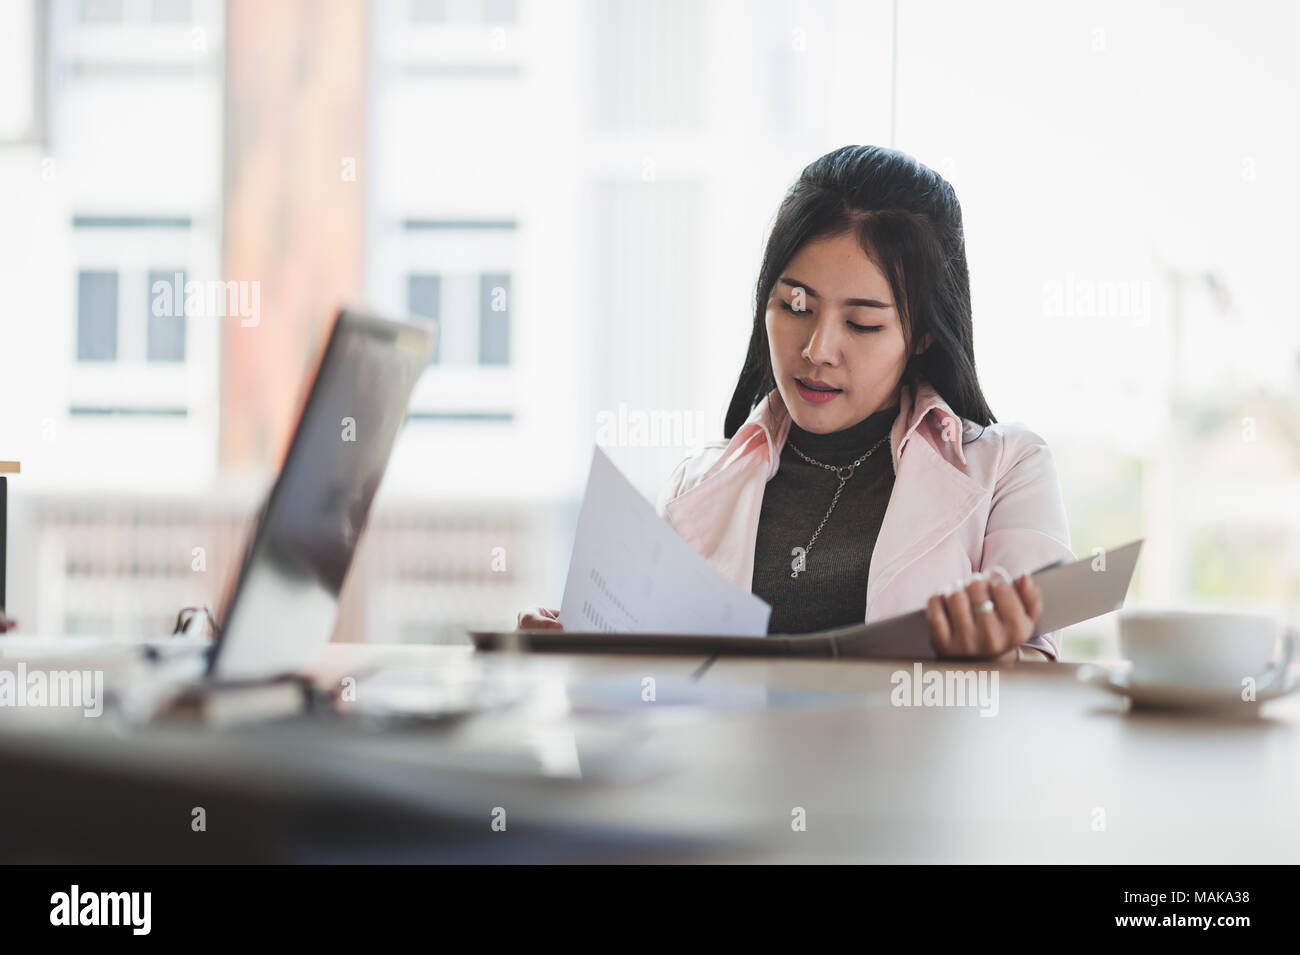 Joven Asiático Femenino ejecutivo gestionar el papeleo en la sala de reuniones. Estilo de vida la gente de negocios en jornada laboral Foto de stock